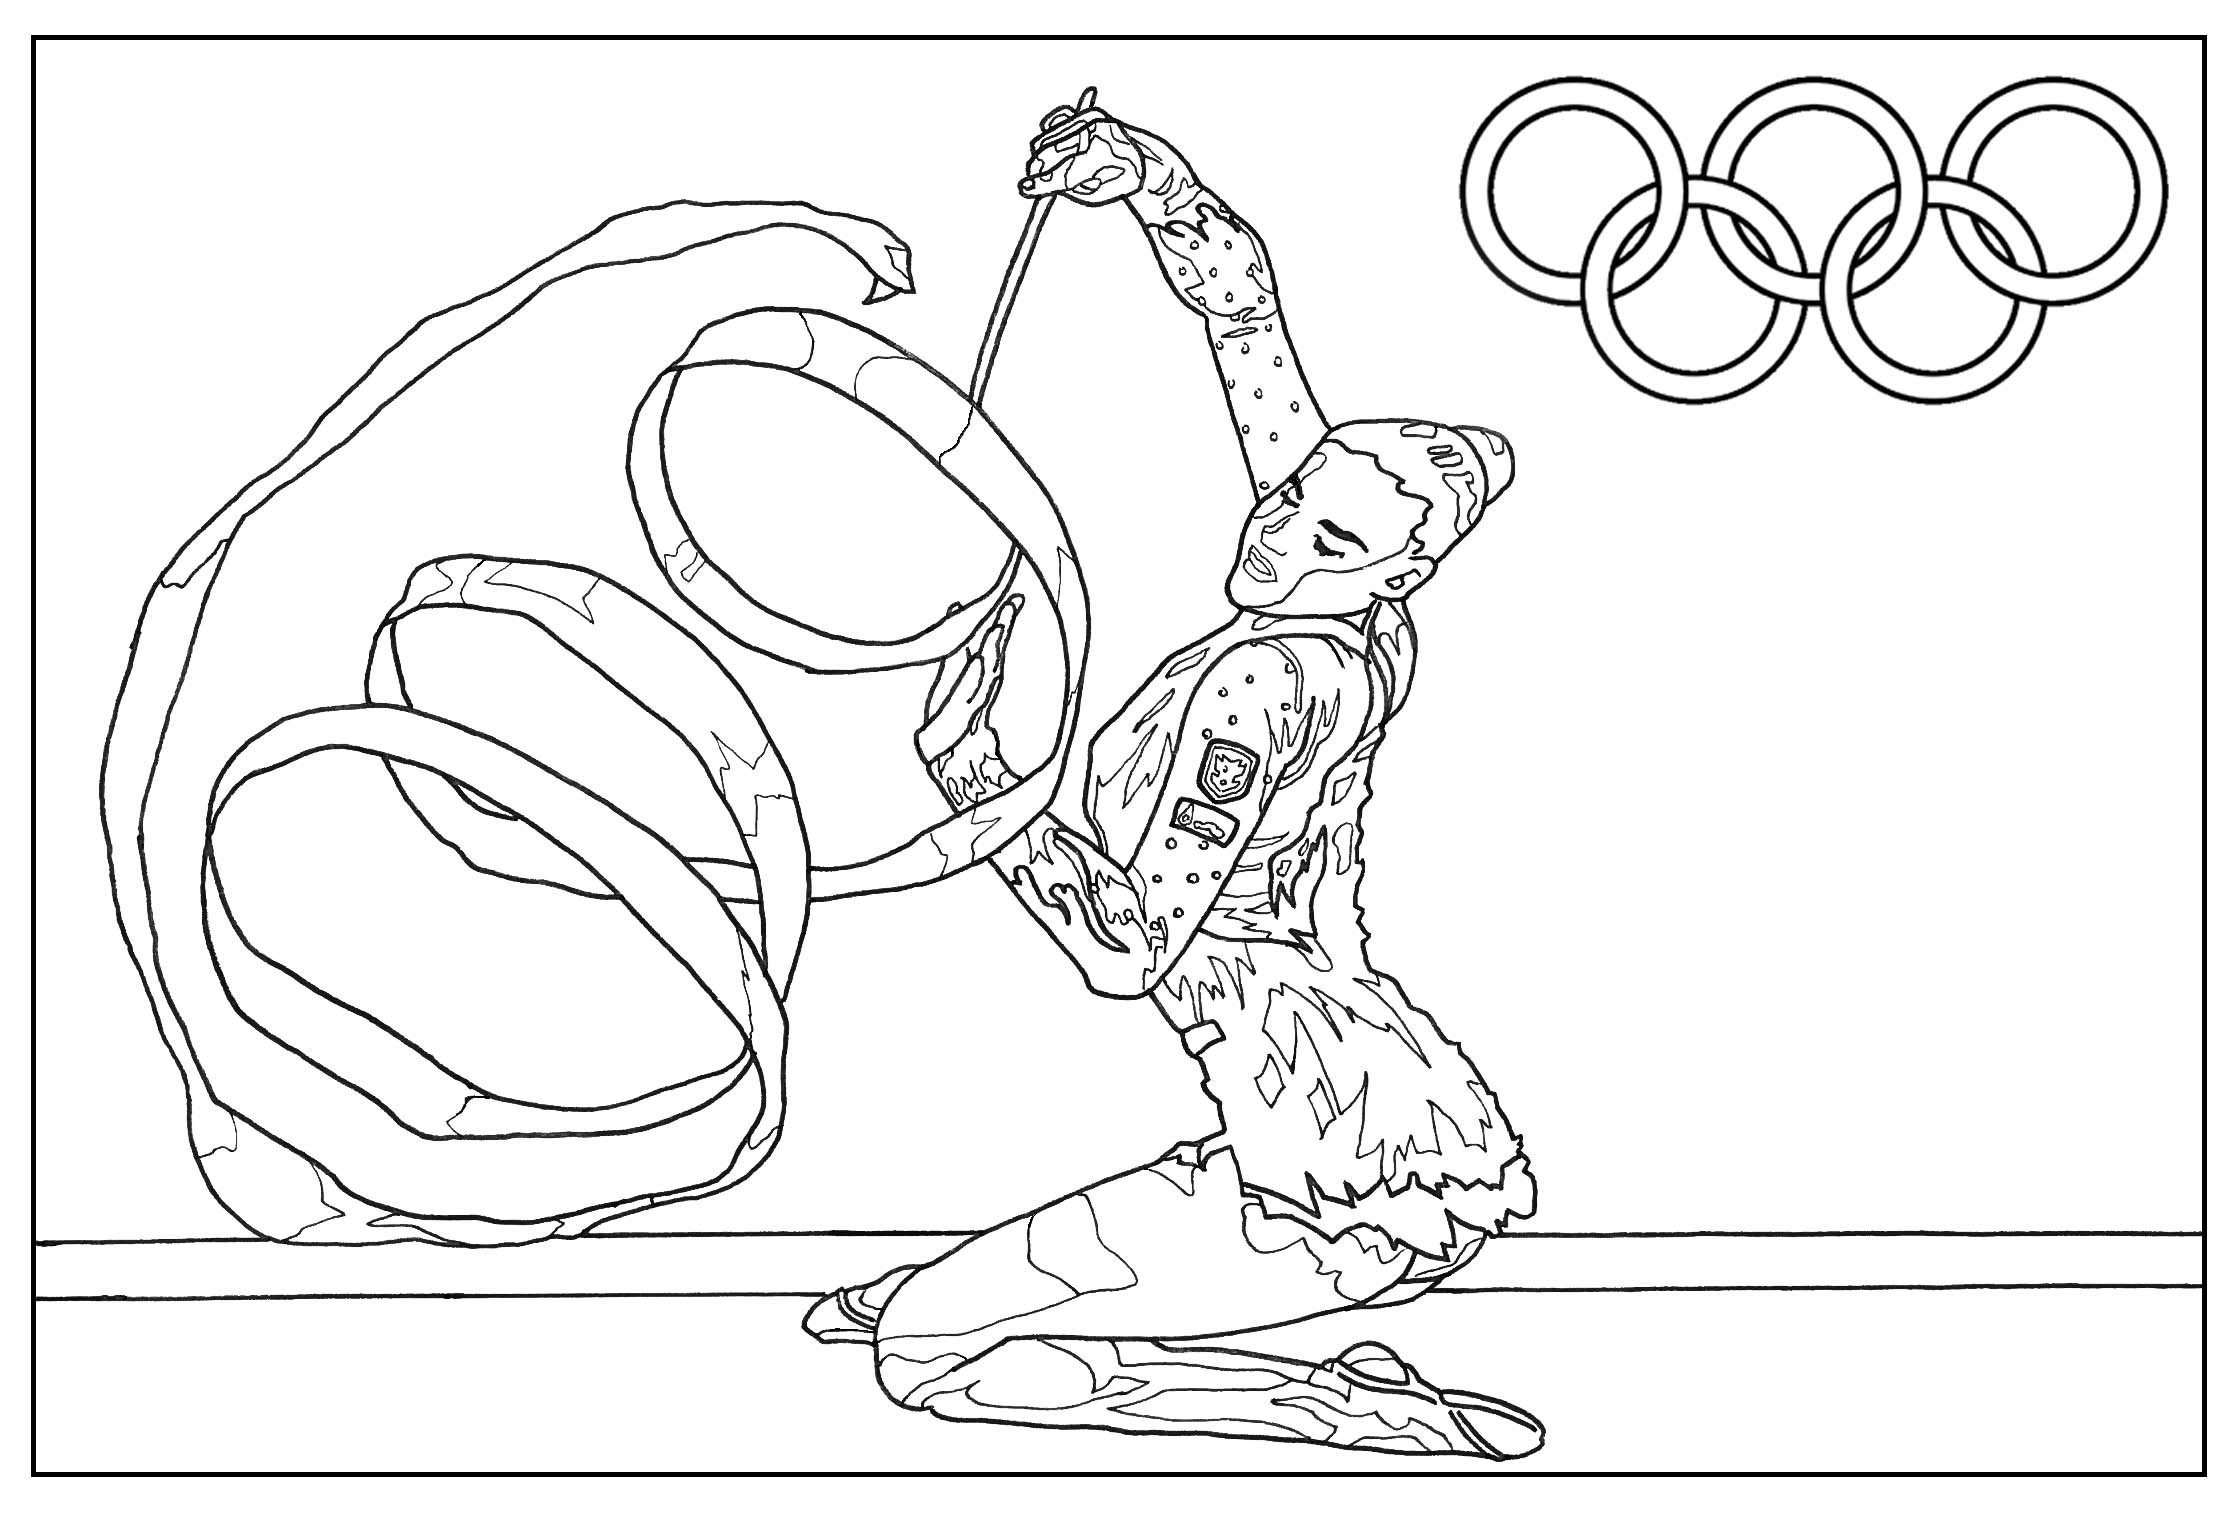 Jogos olimpicos : Desenhos para colorir, Jogos gratuitos para